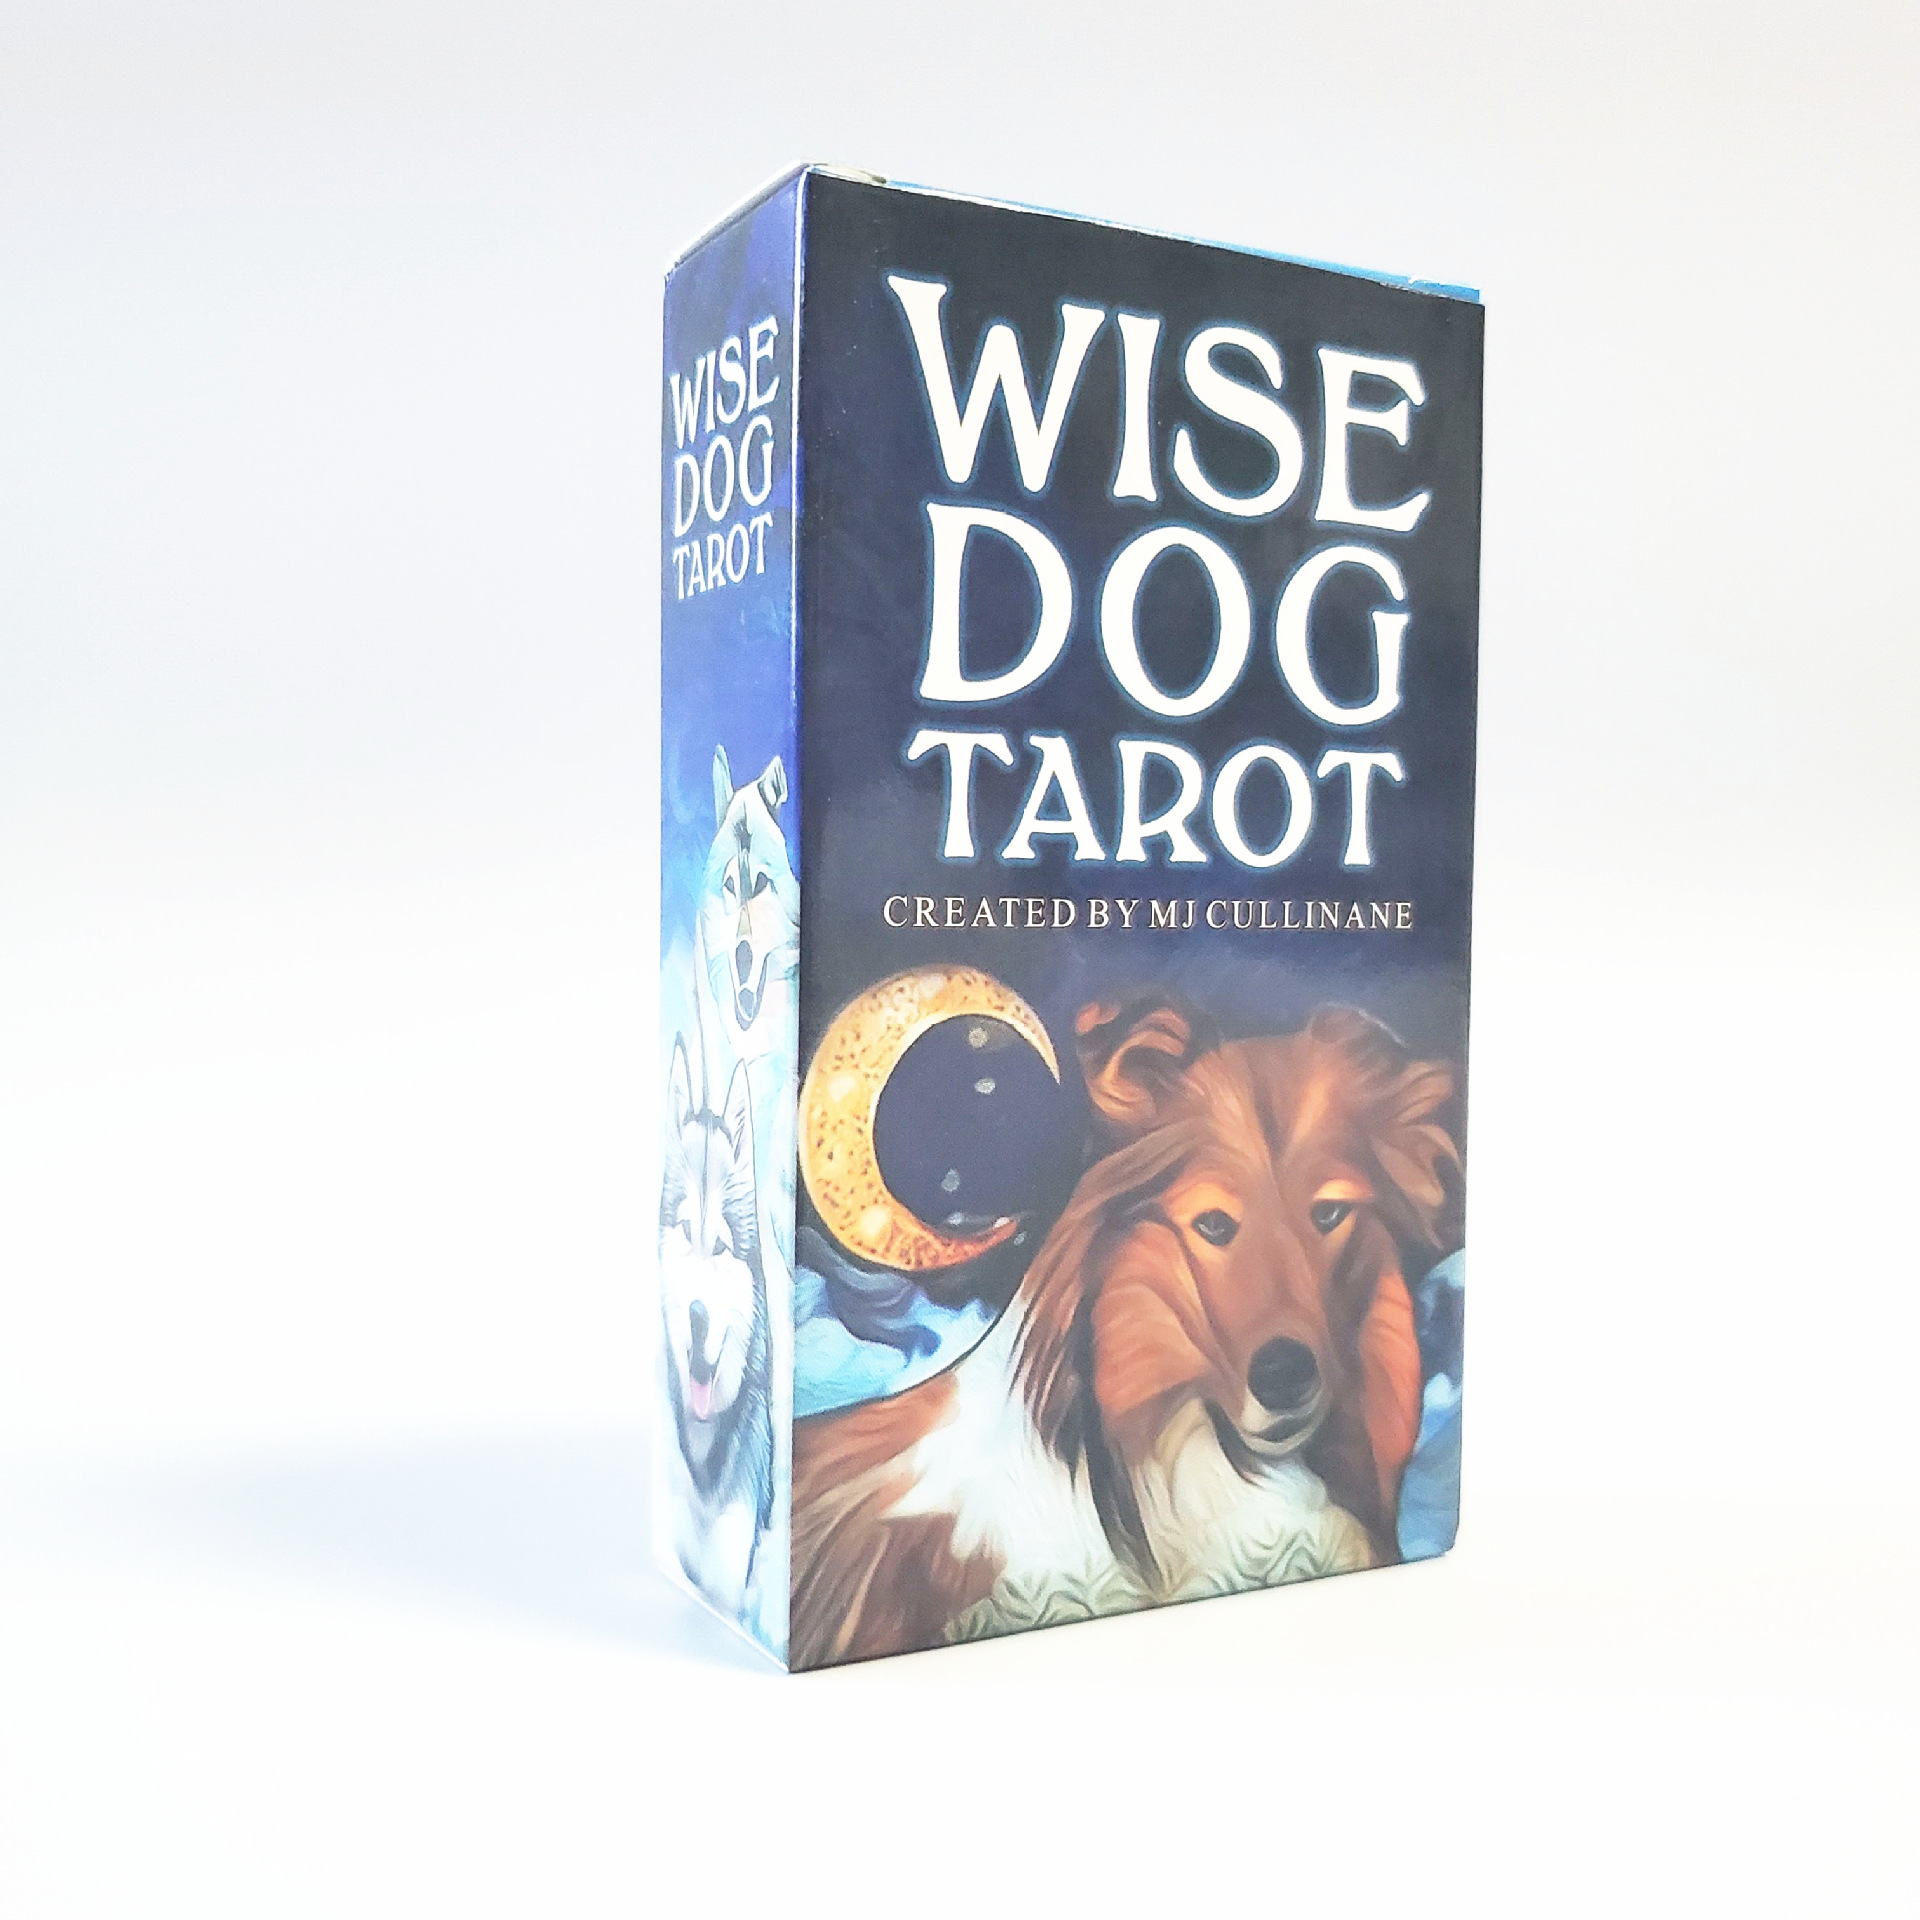 聰明狗塔羅牌Wise Dog Tarot